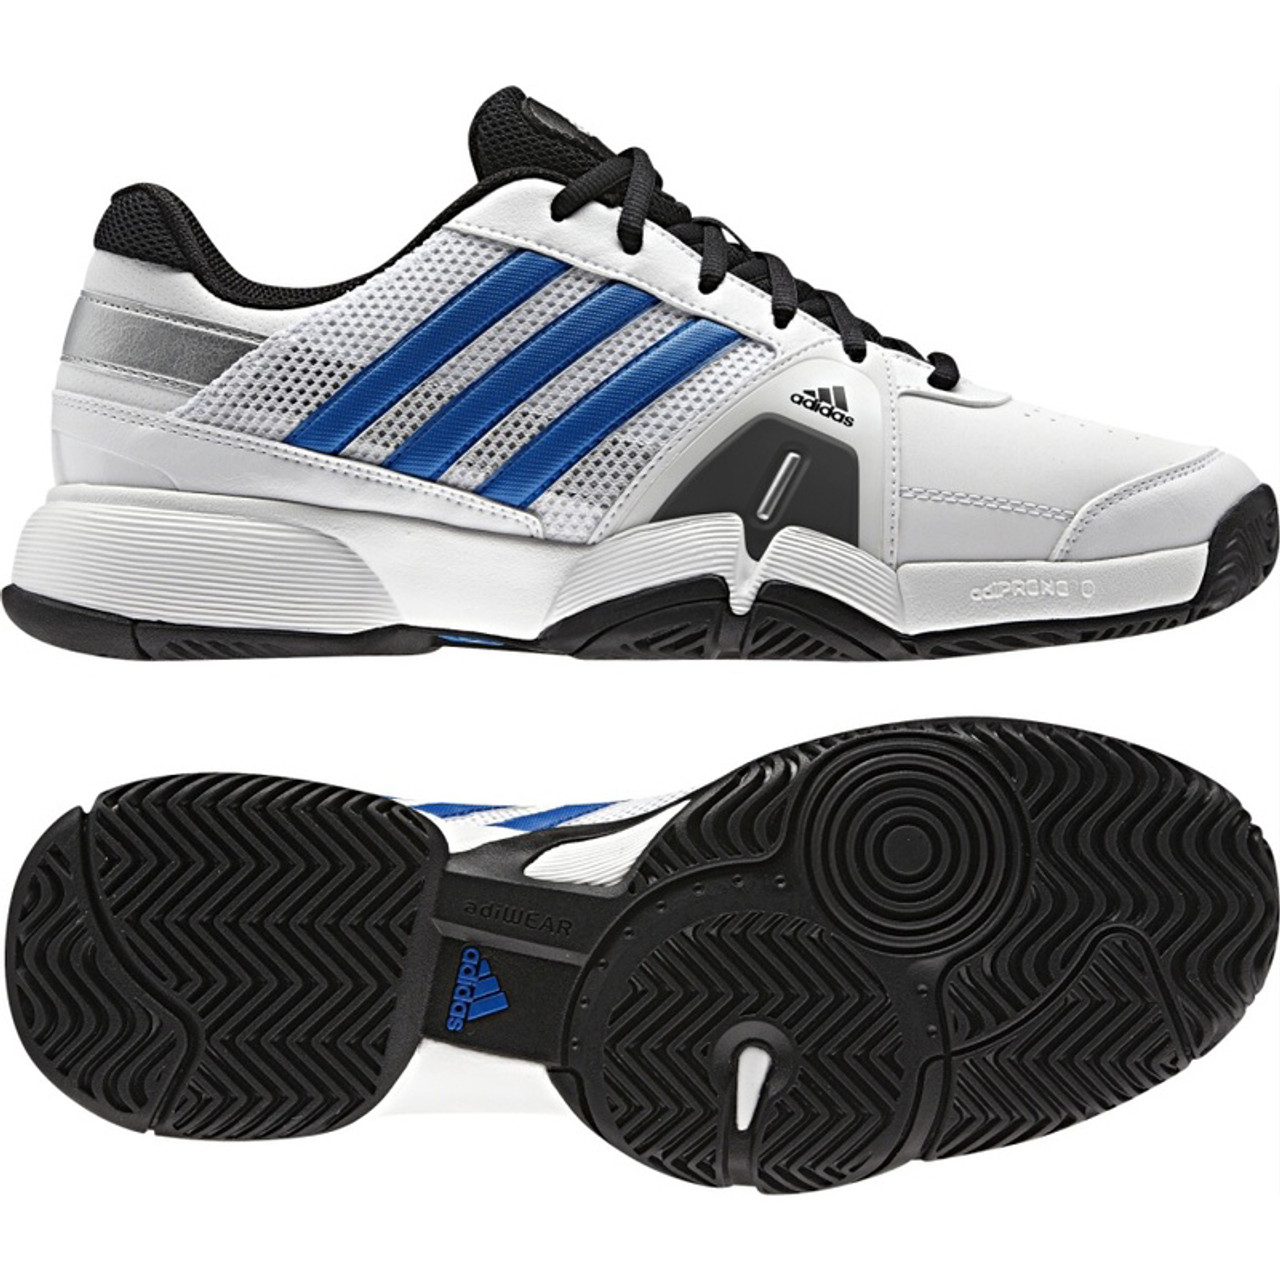 Adidas Barricade Team 3 White/Blue Mens Tennis Shoes | Discount Adidas Men's Athletic Shoes More - Shoolu.com | Shoolu.com